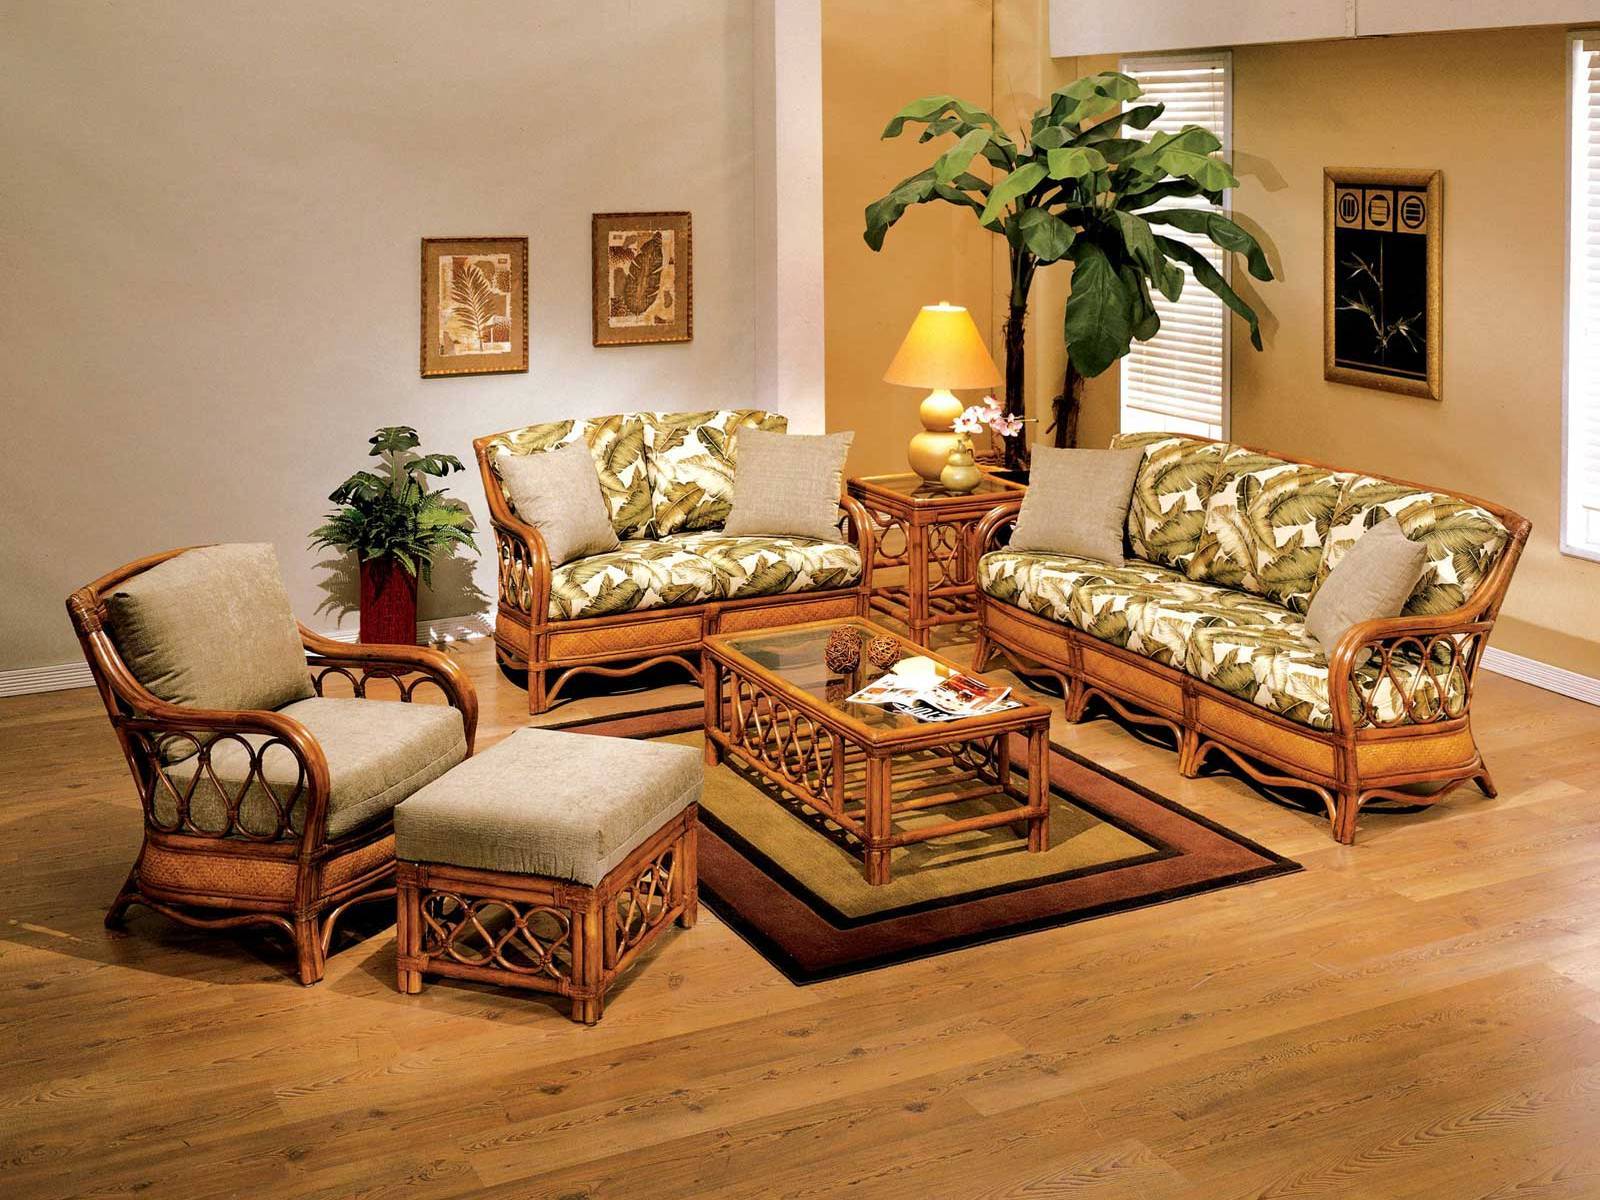 furniture in living room design